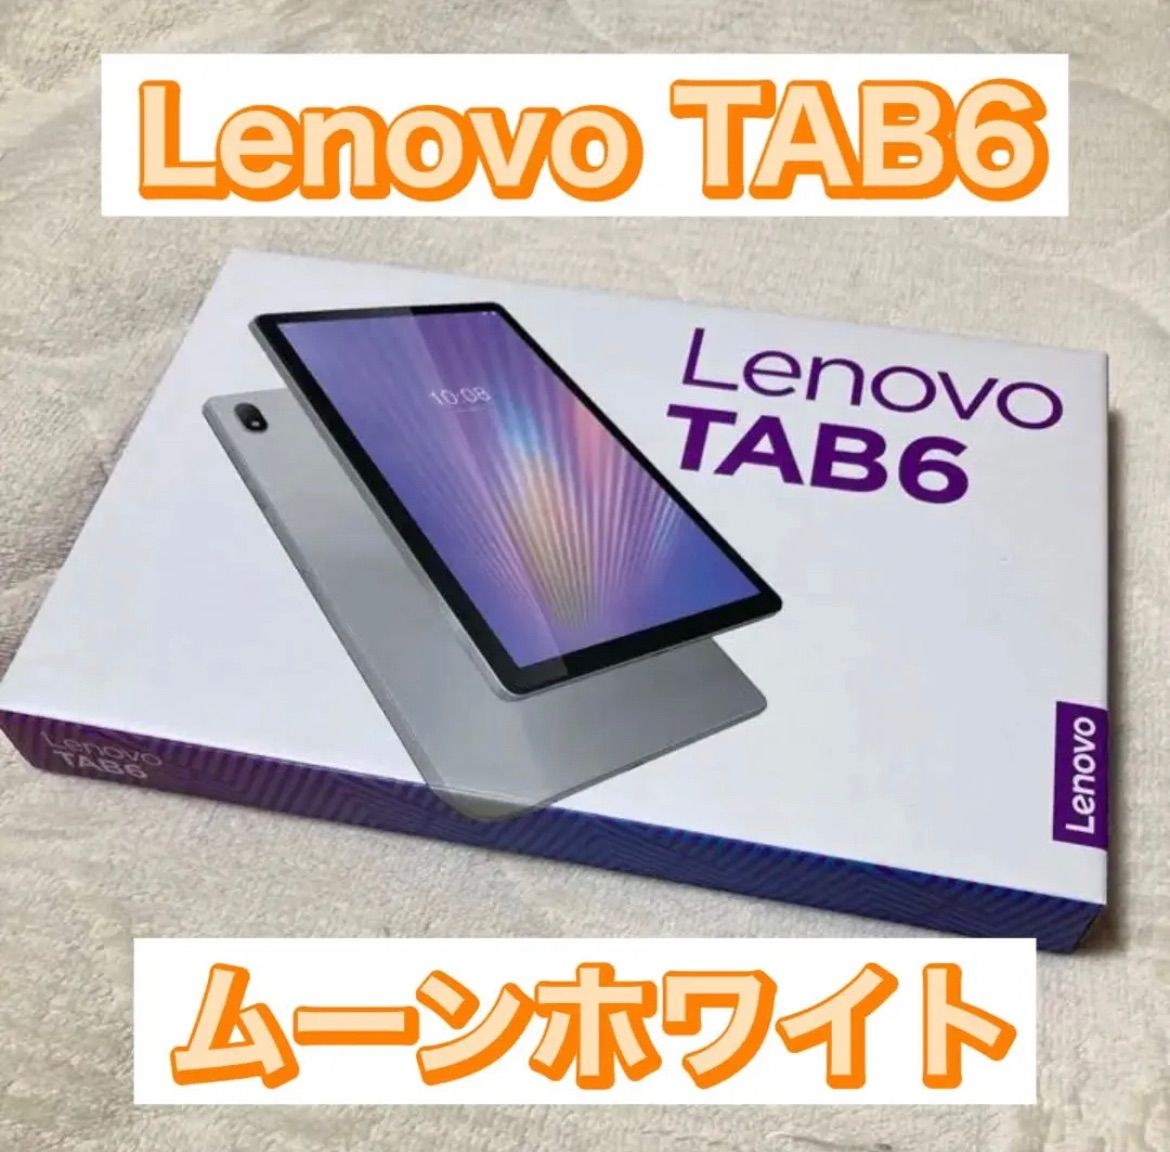 Lenovo TAB6 ムーンホワイト